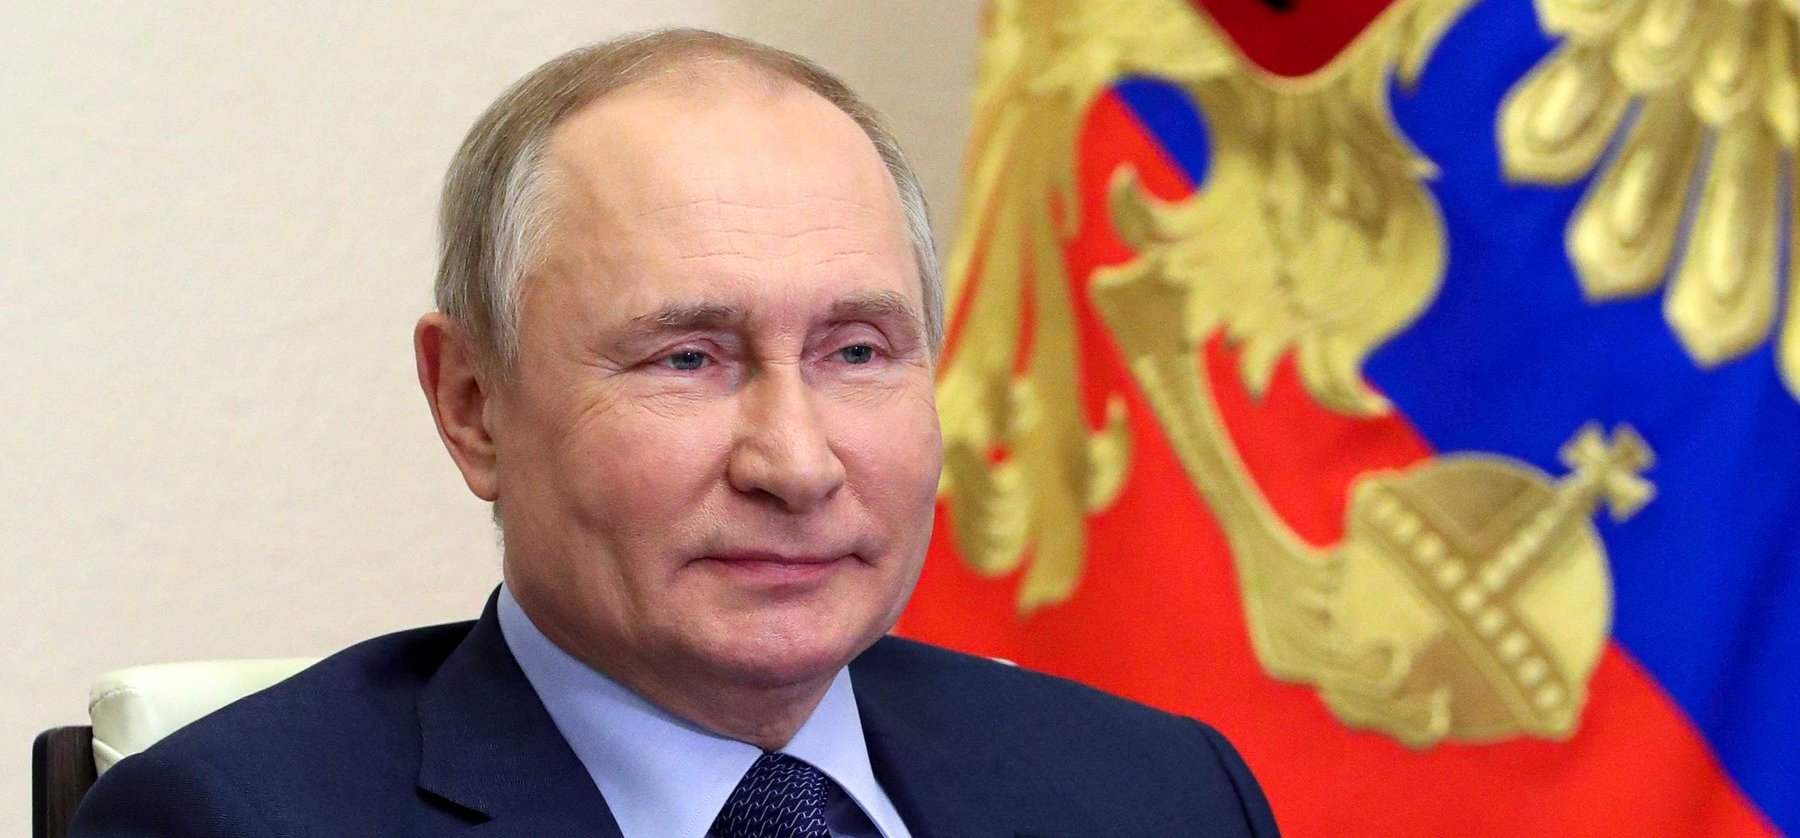 Putyin ezen a napon fejezi be a háborút - fény derült az oroszok nagy tervére